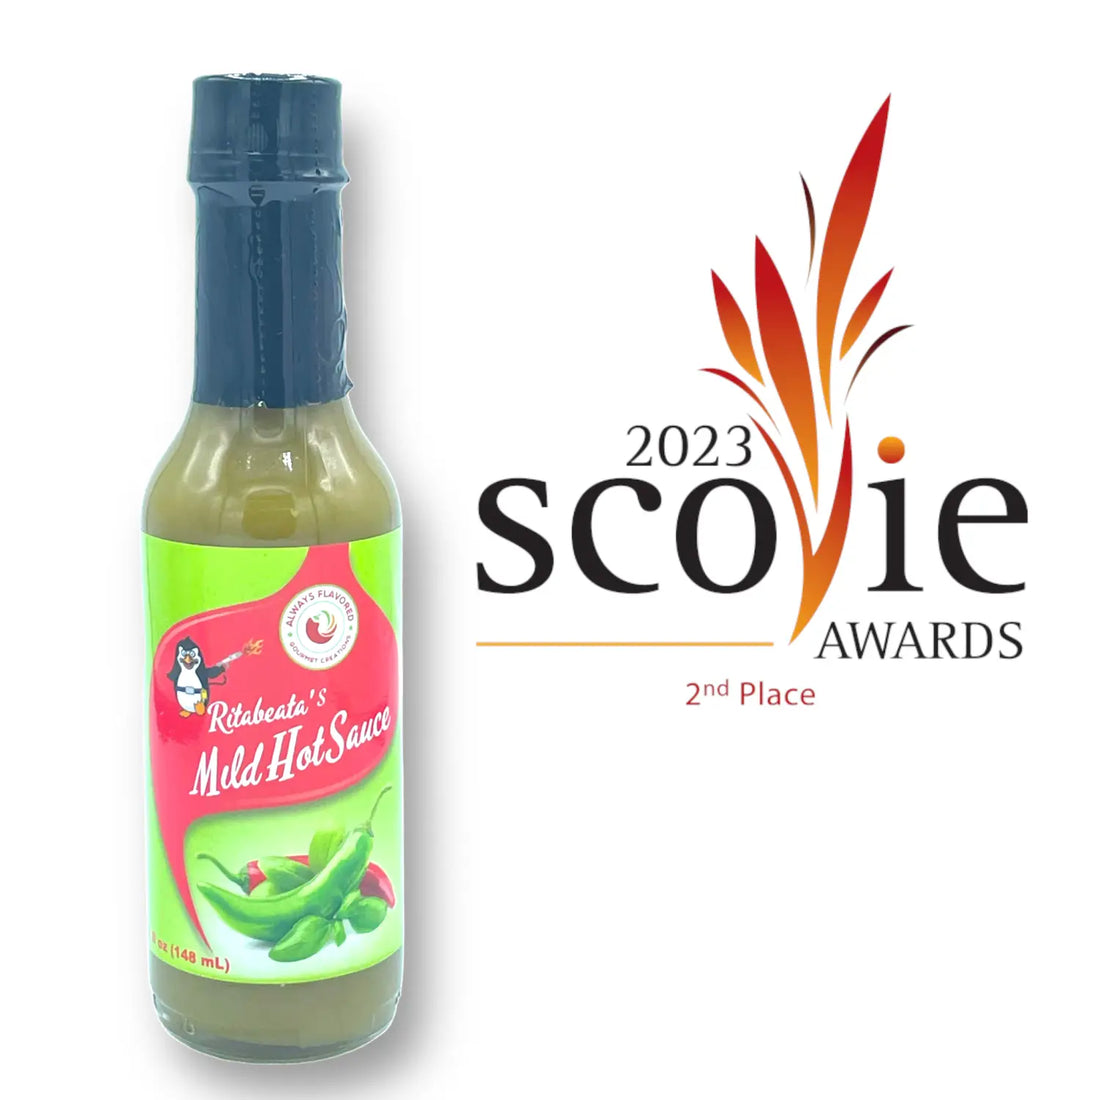 Scovie Awards: Ritabeata’s Mild Hot Sauce is a Winner!